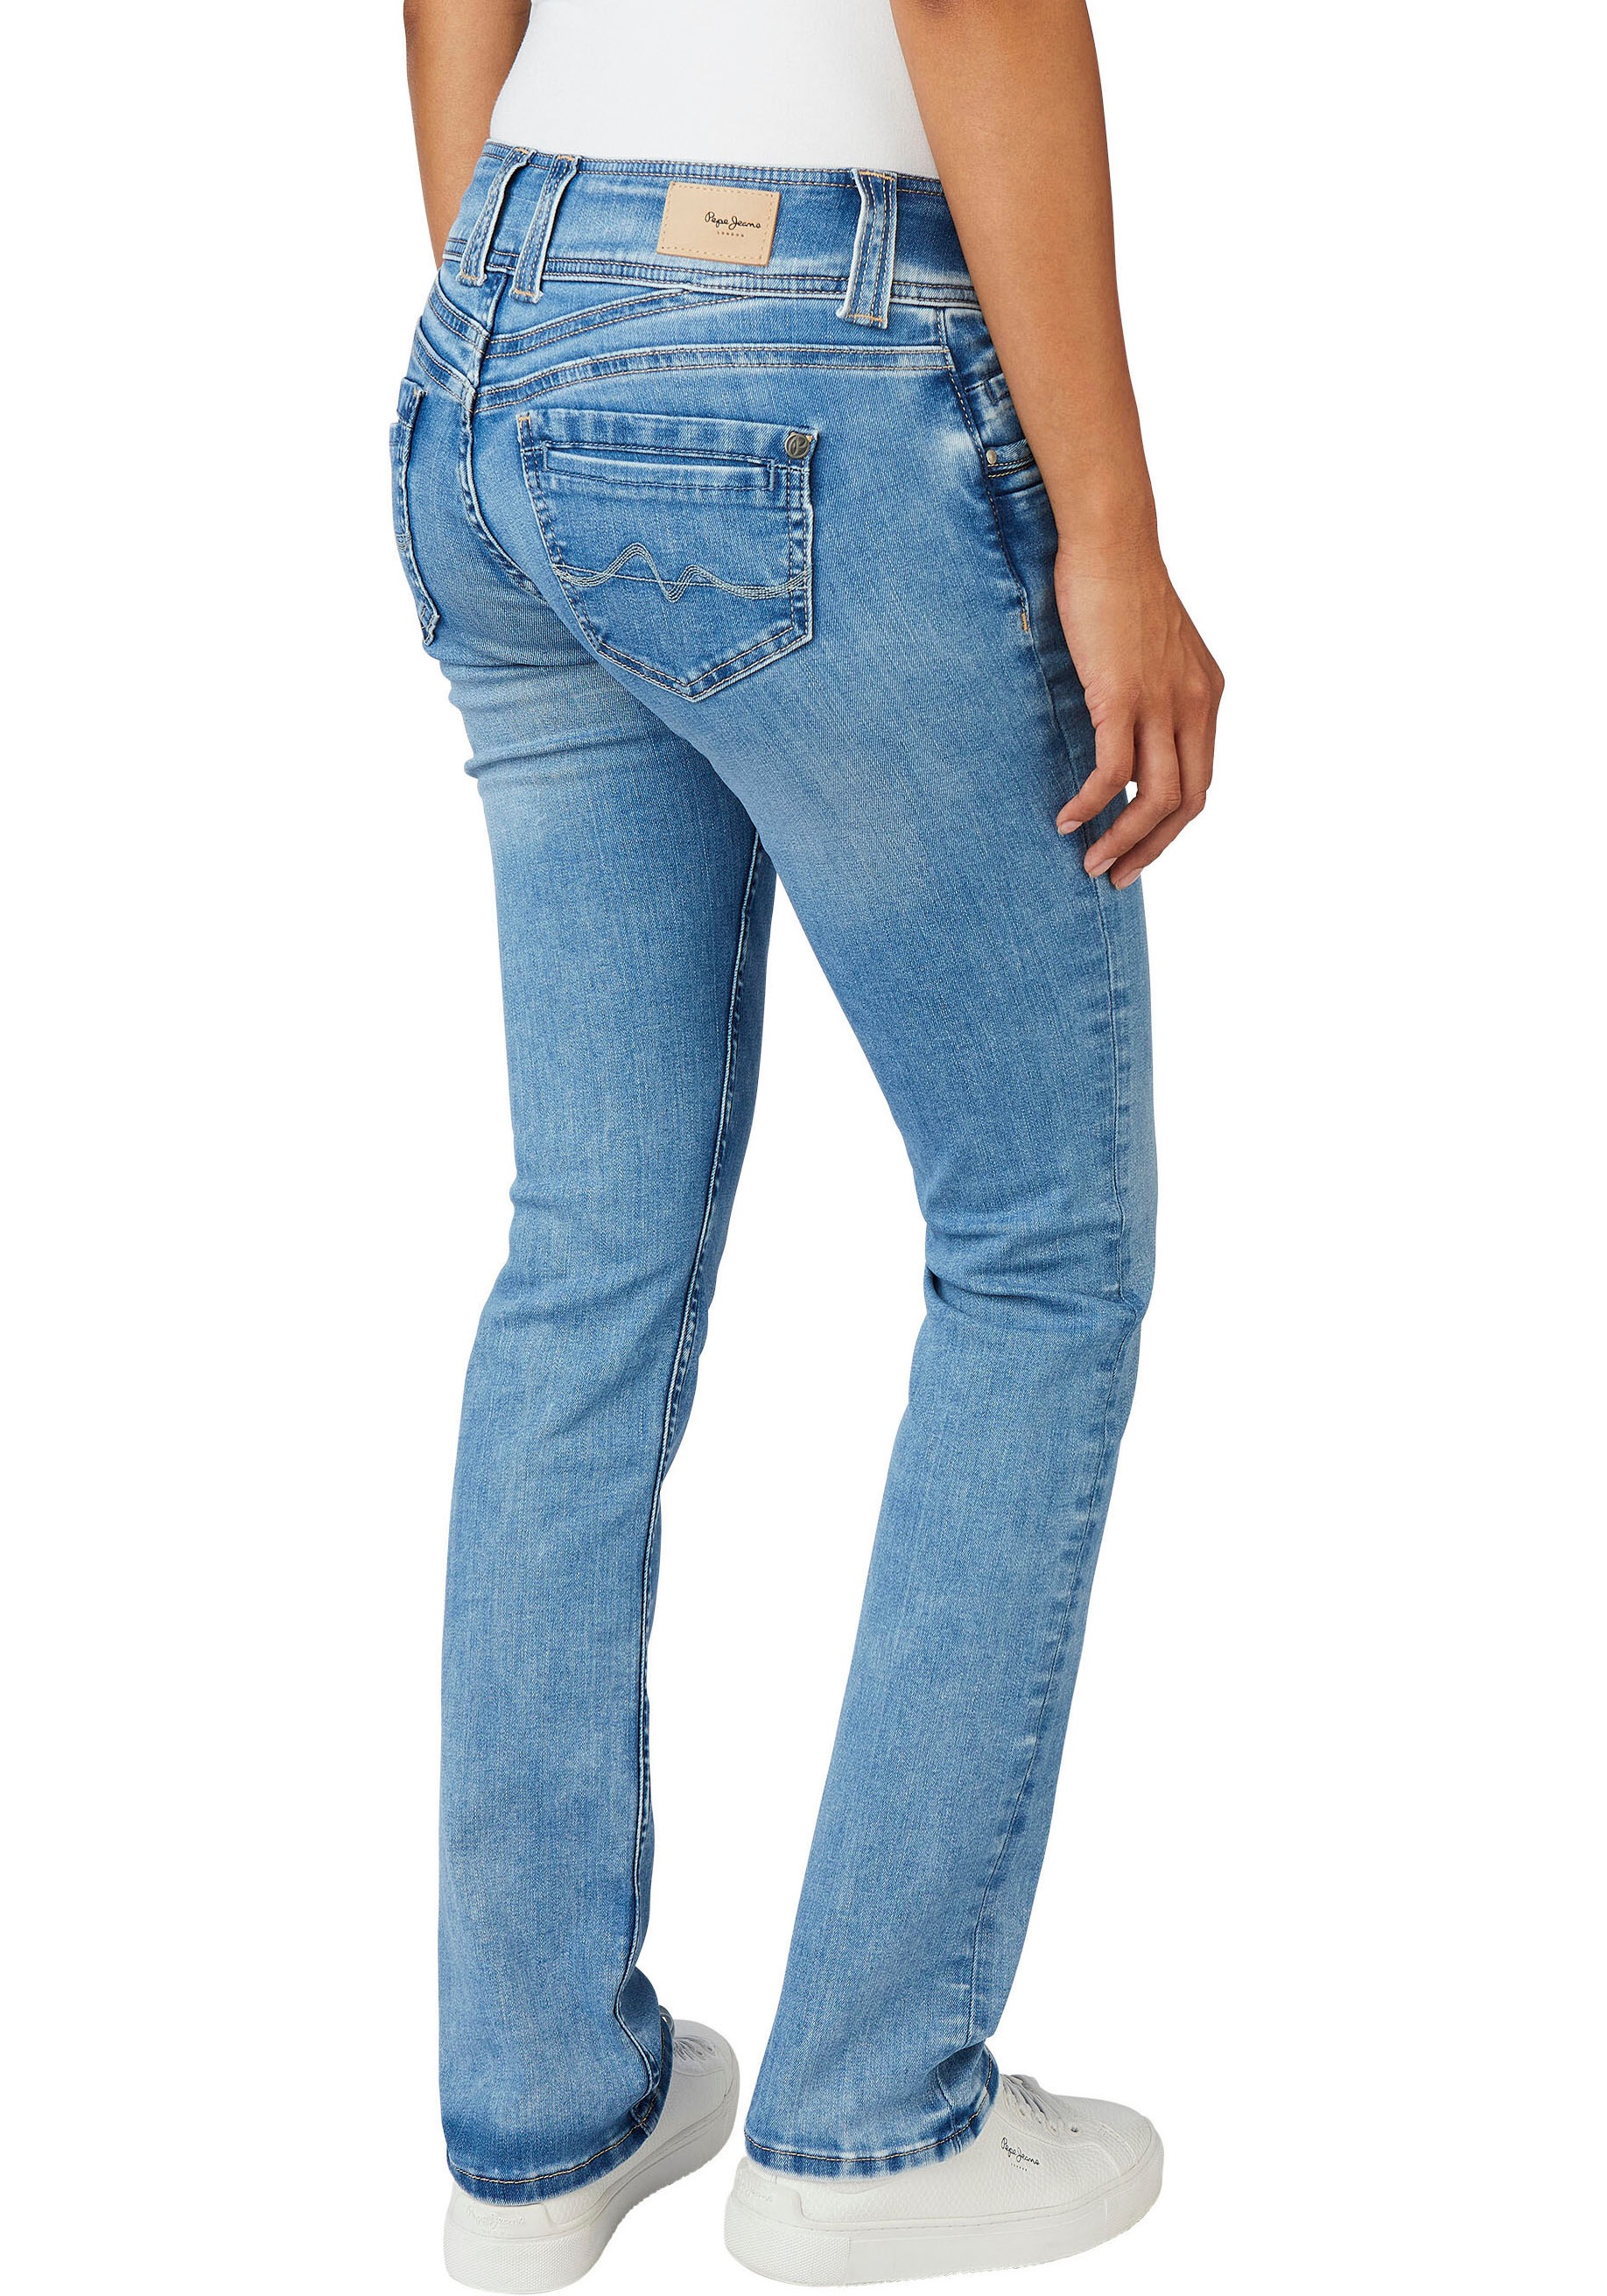 geradem »GEN«, Bein Pepe Qualtät Doppel-Knopf-Bund Straight-Jeans in Jeans mit schöner online und